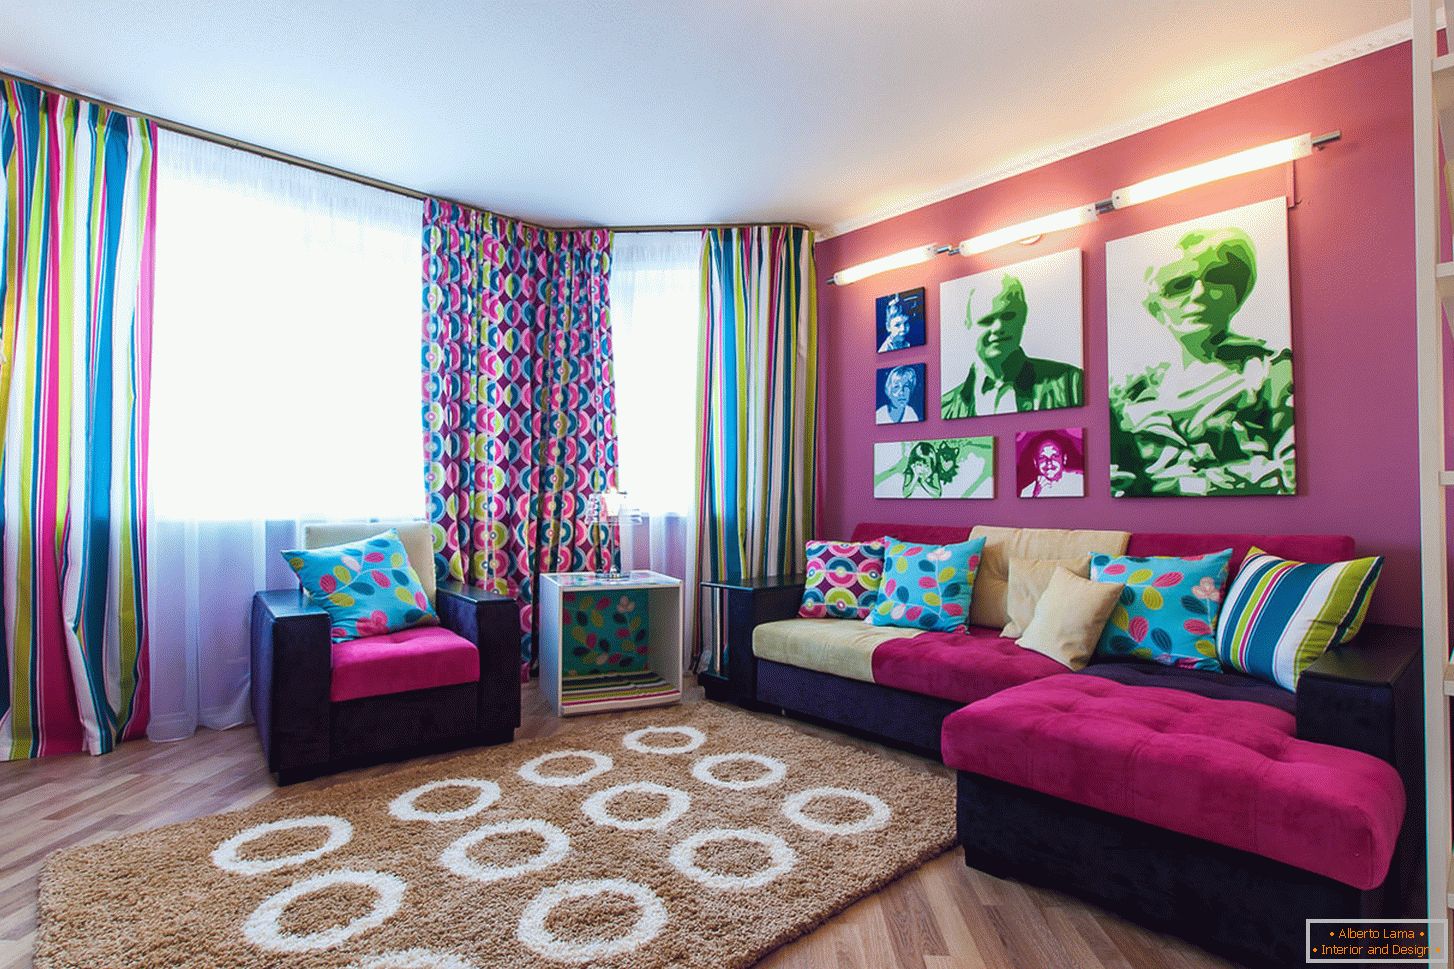 Helle Farben im Design des Wohnzimmers